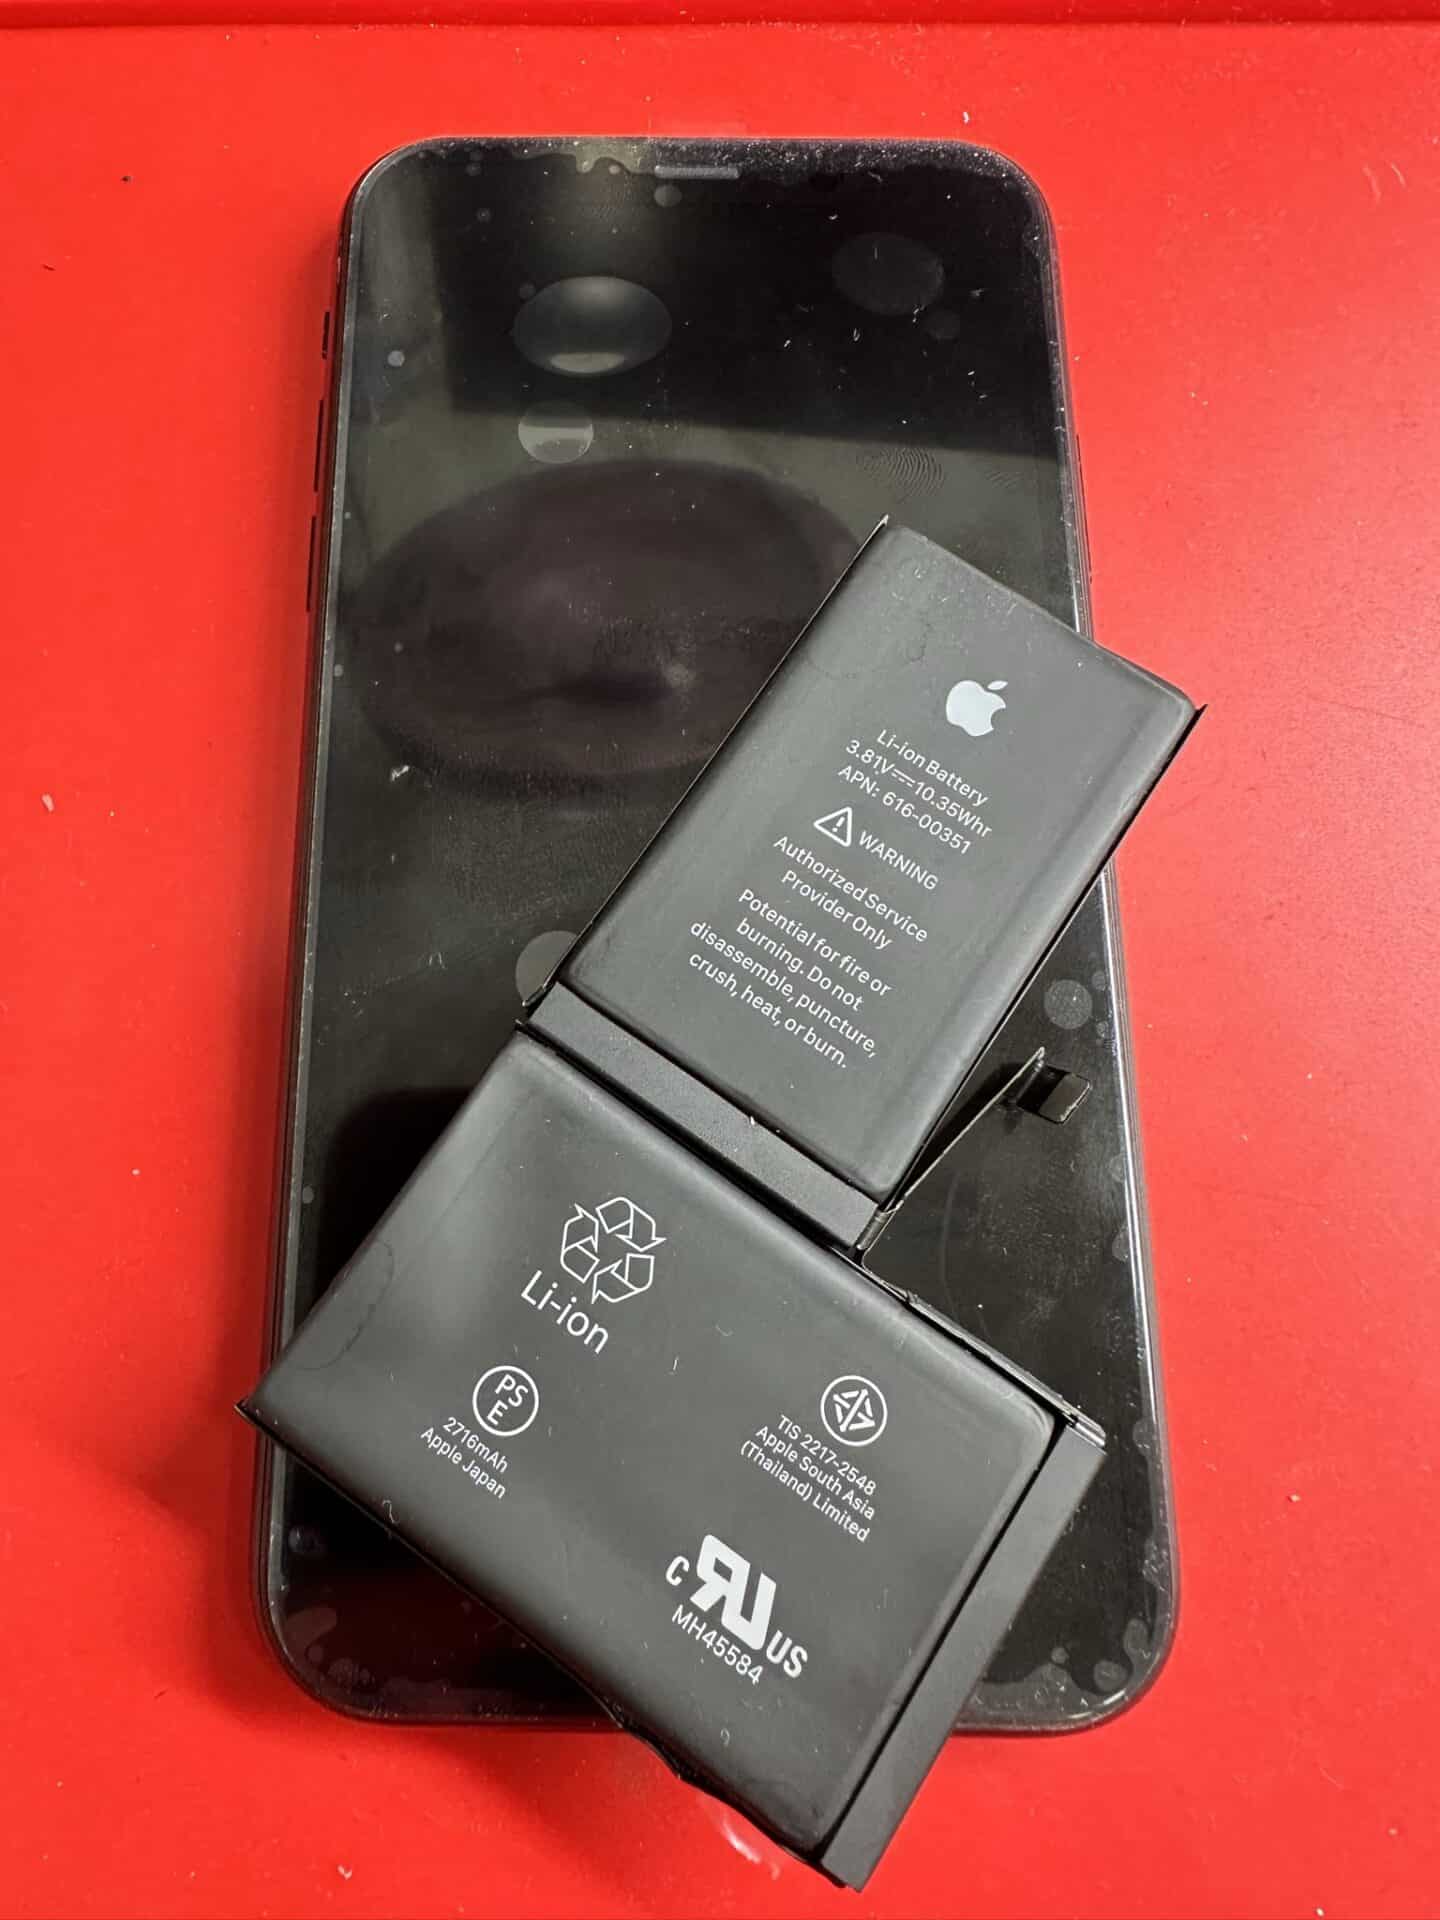 Batería original de Apple para reparar tu iPhone X